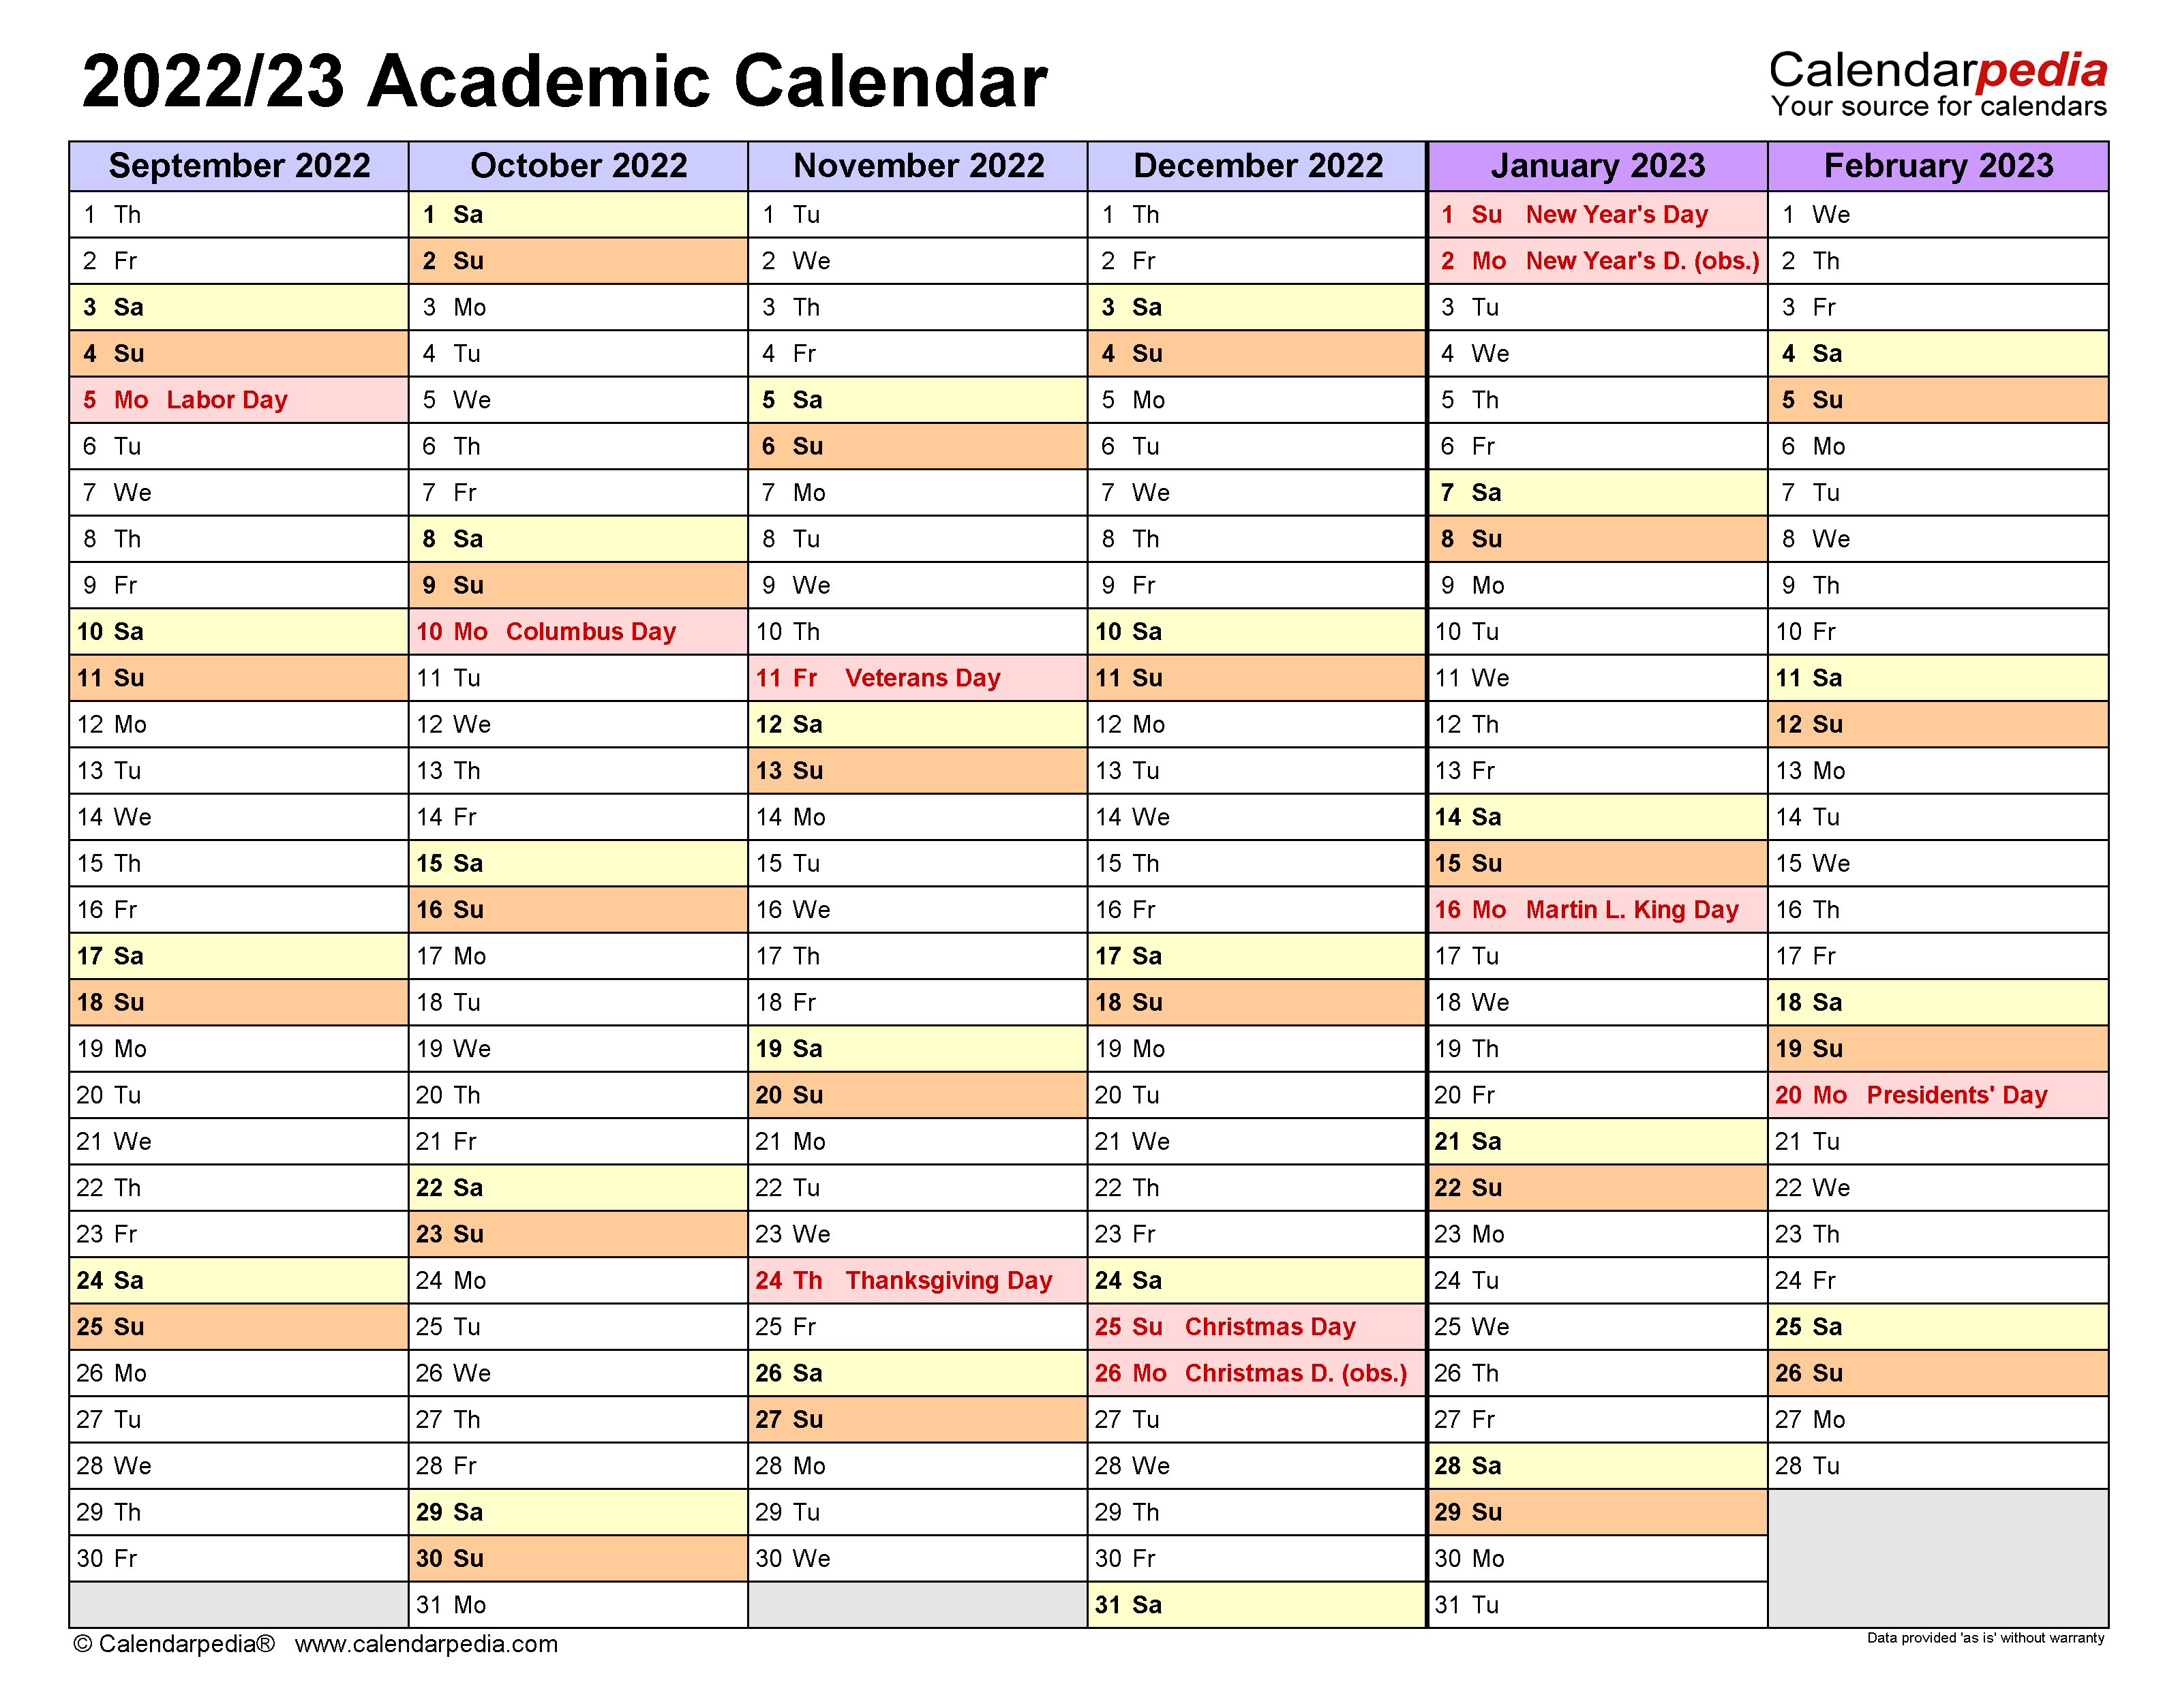 Pitt Academic Calendar 20222023